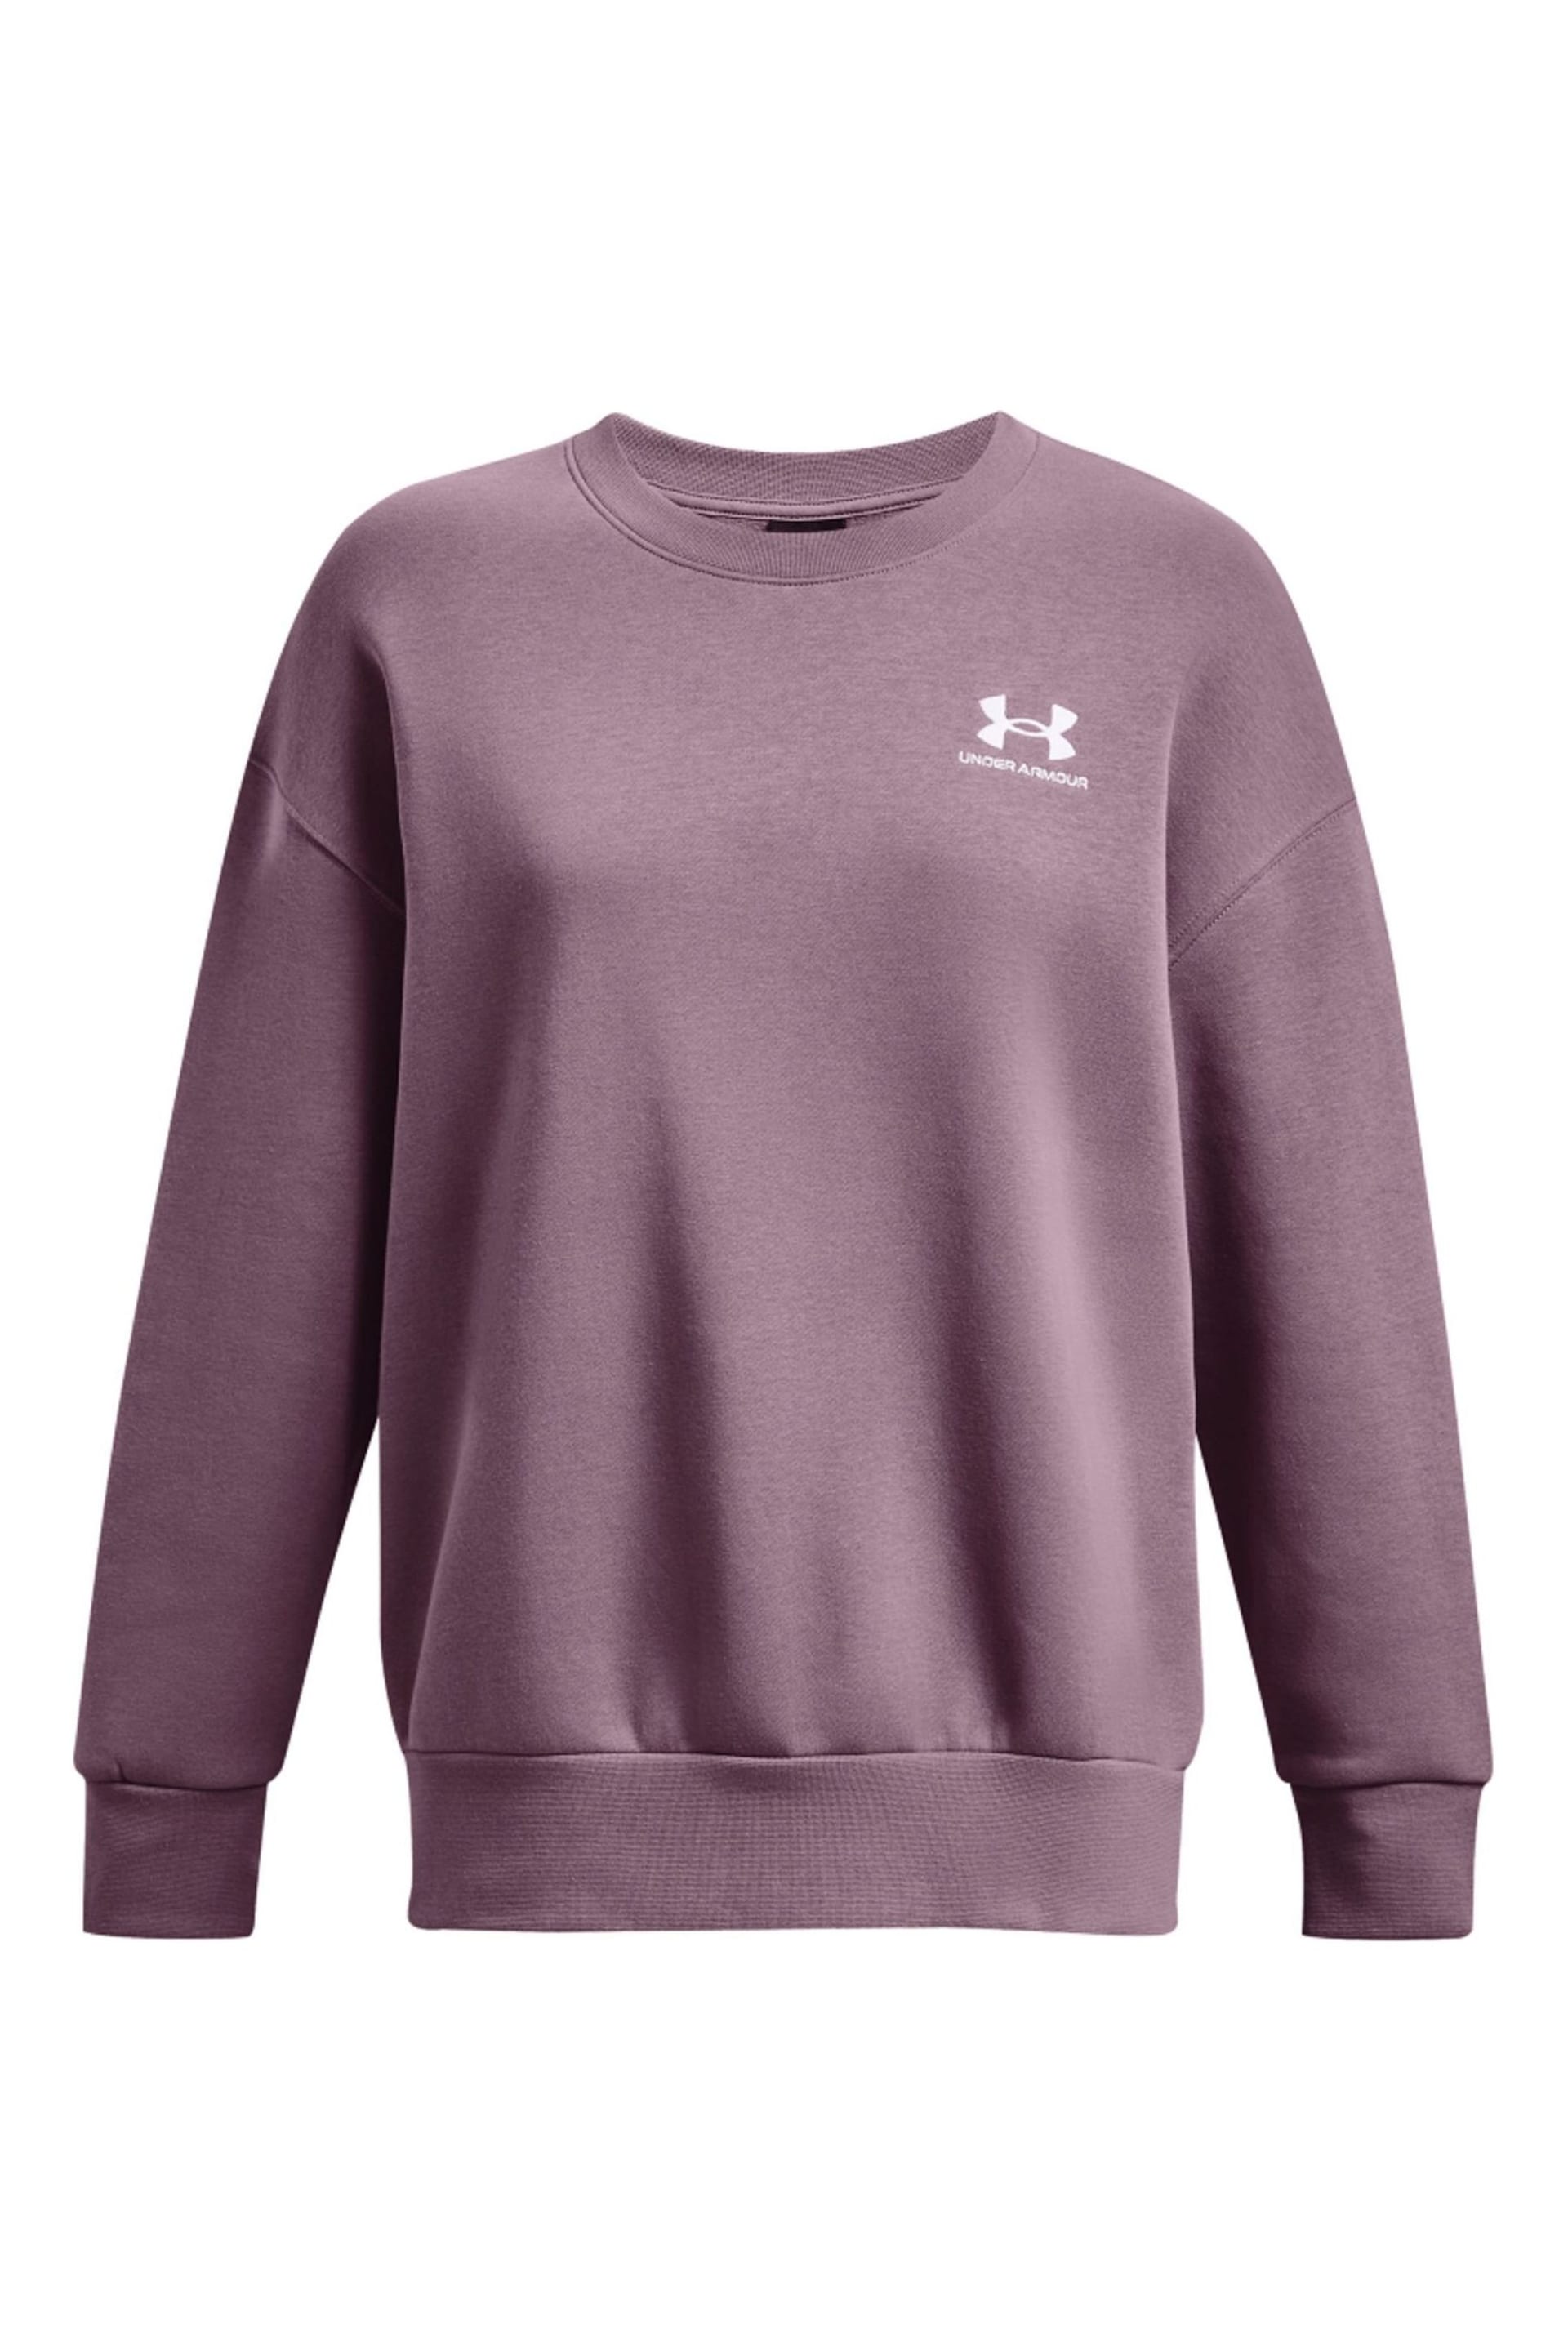 Under Armour Purple Essential Fleece Oversized Crew Sweatshirt - Image 5 of 6